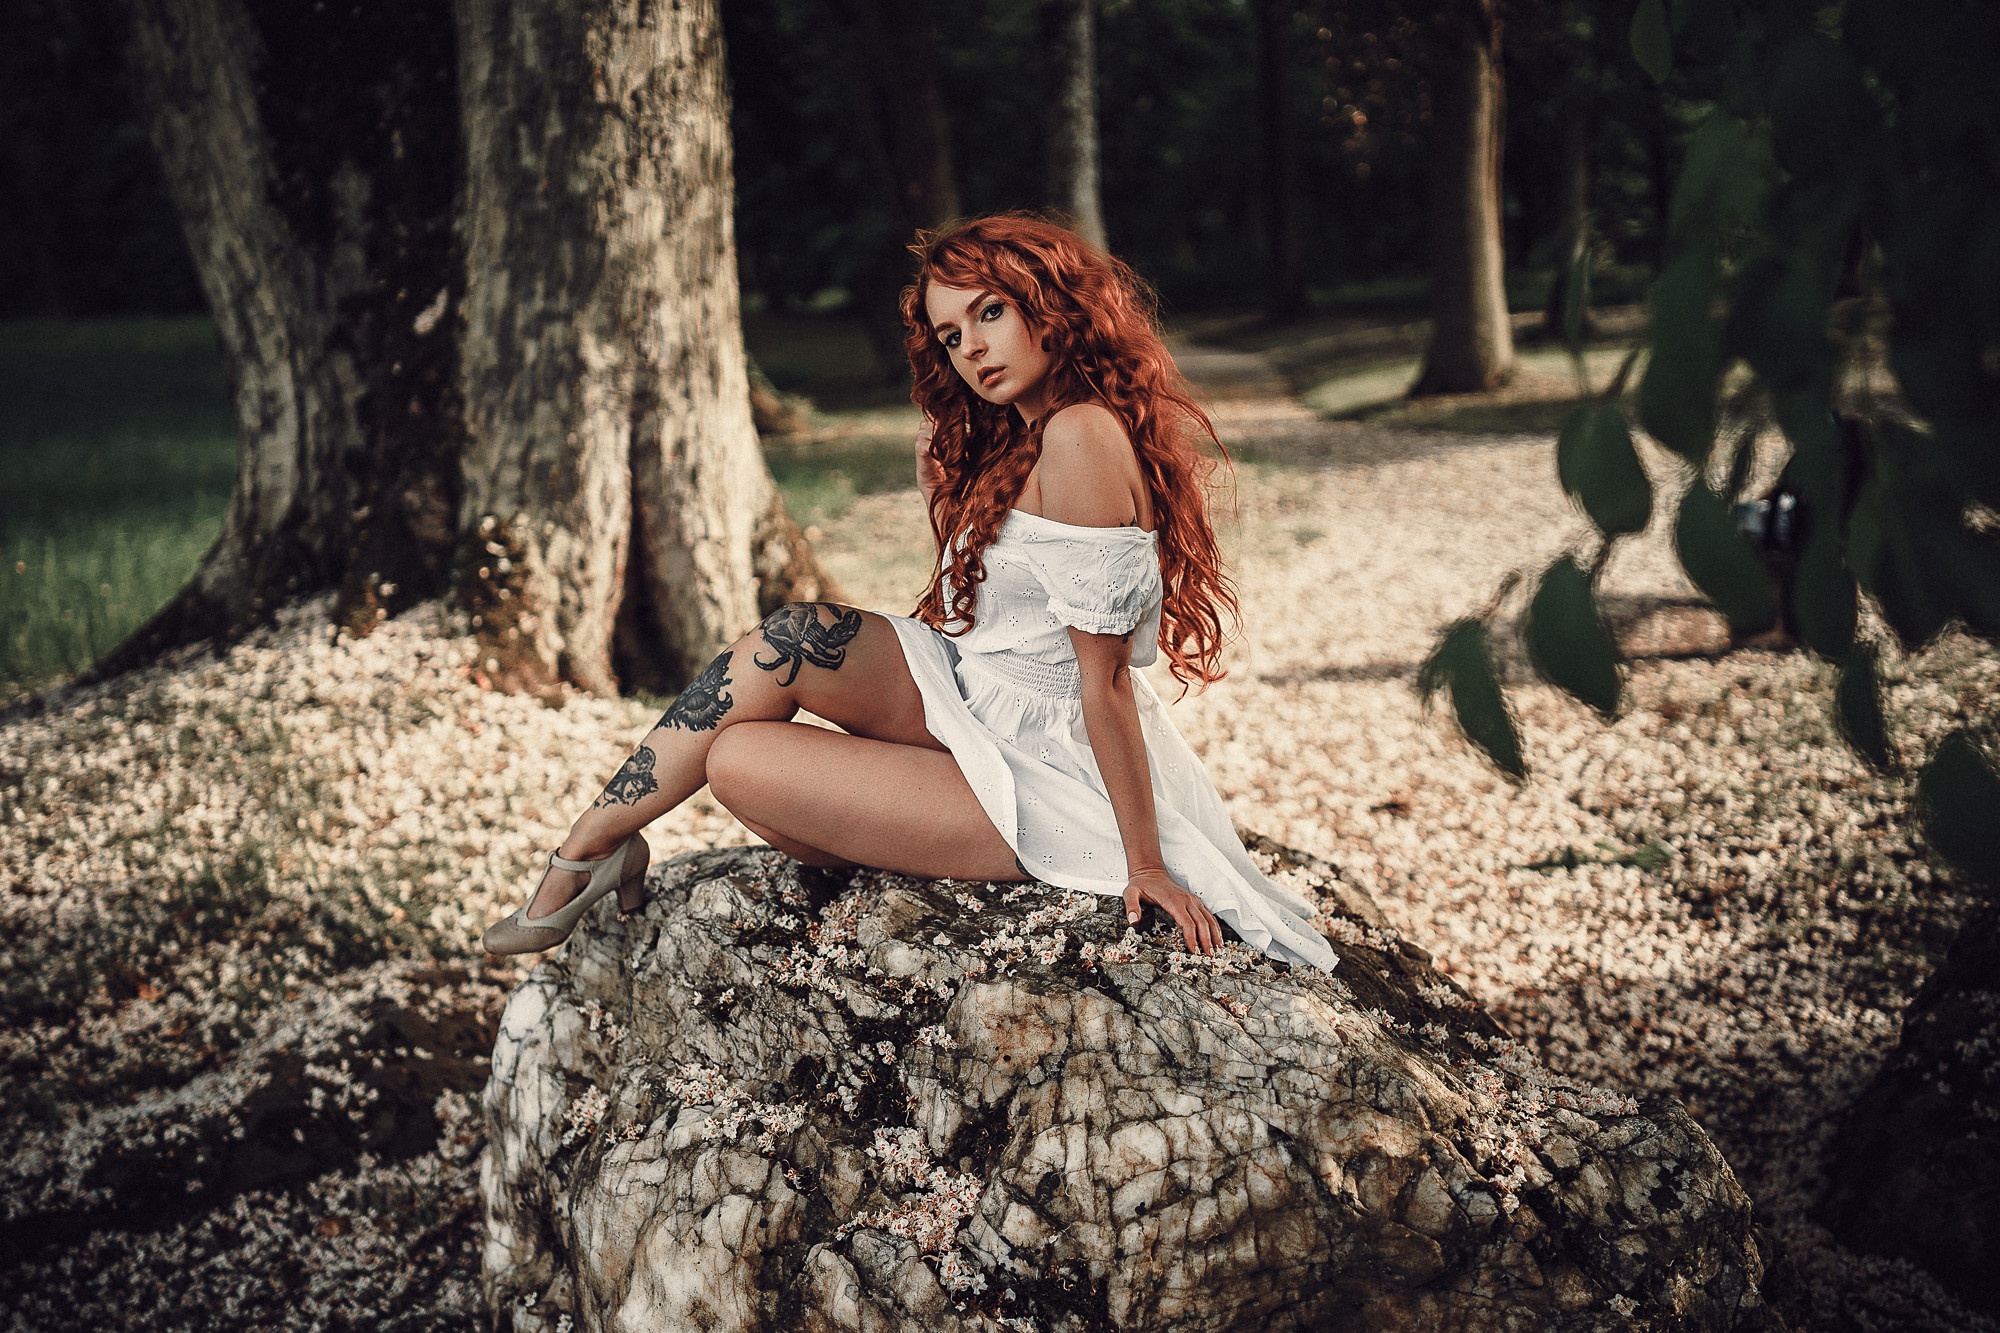 People 2000x1333 redhead sitting women outdoors women model white dress bare shoulders tattoo tree trunk rocks